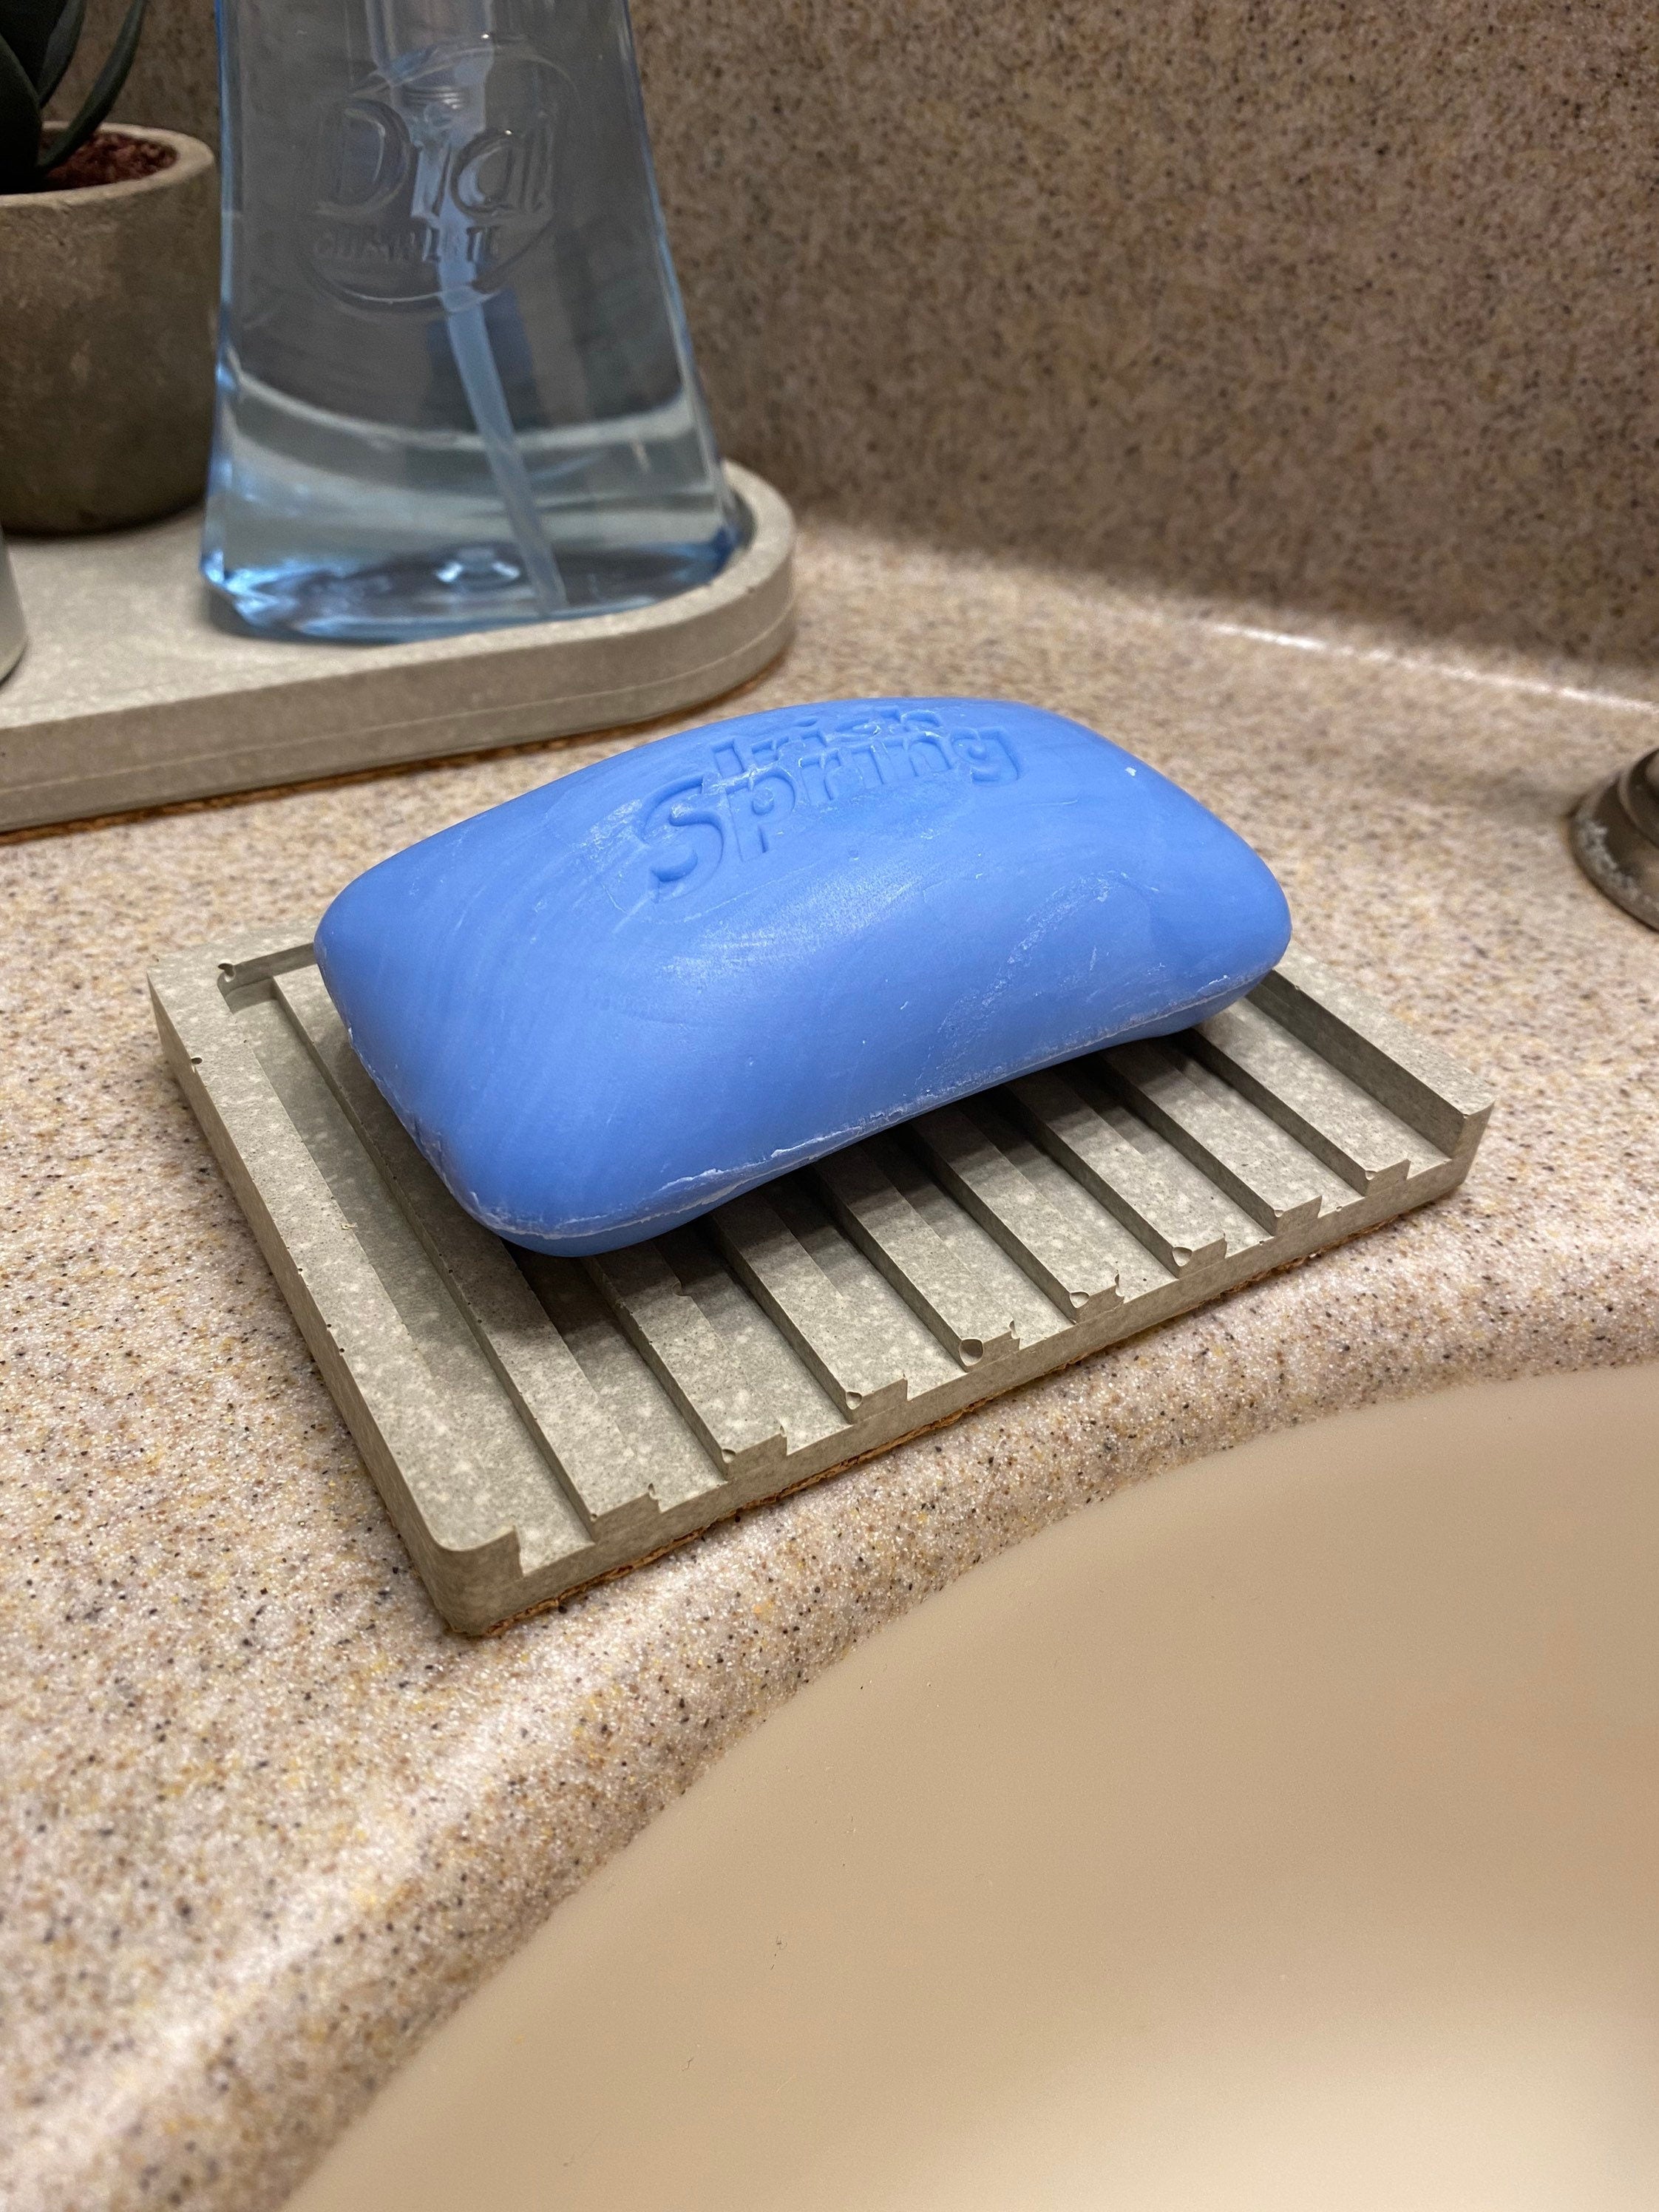 Concrete Soap Dish Silicone Mold